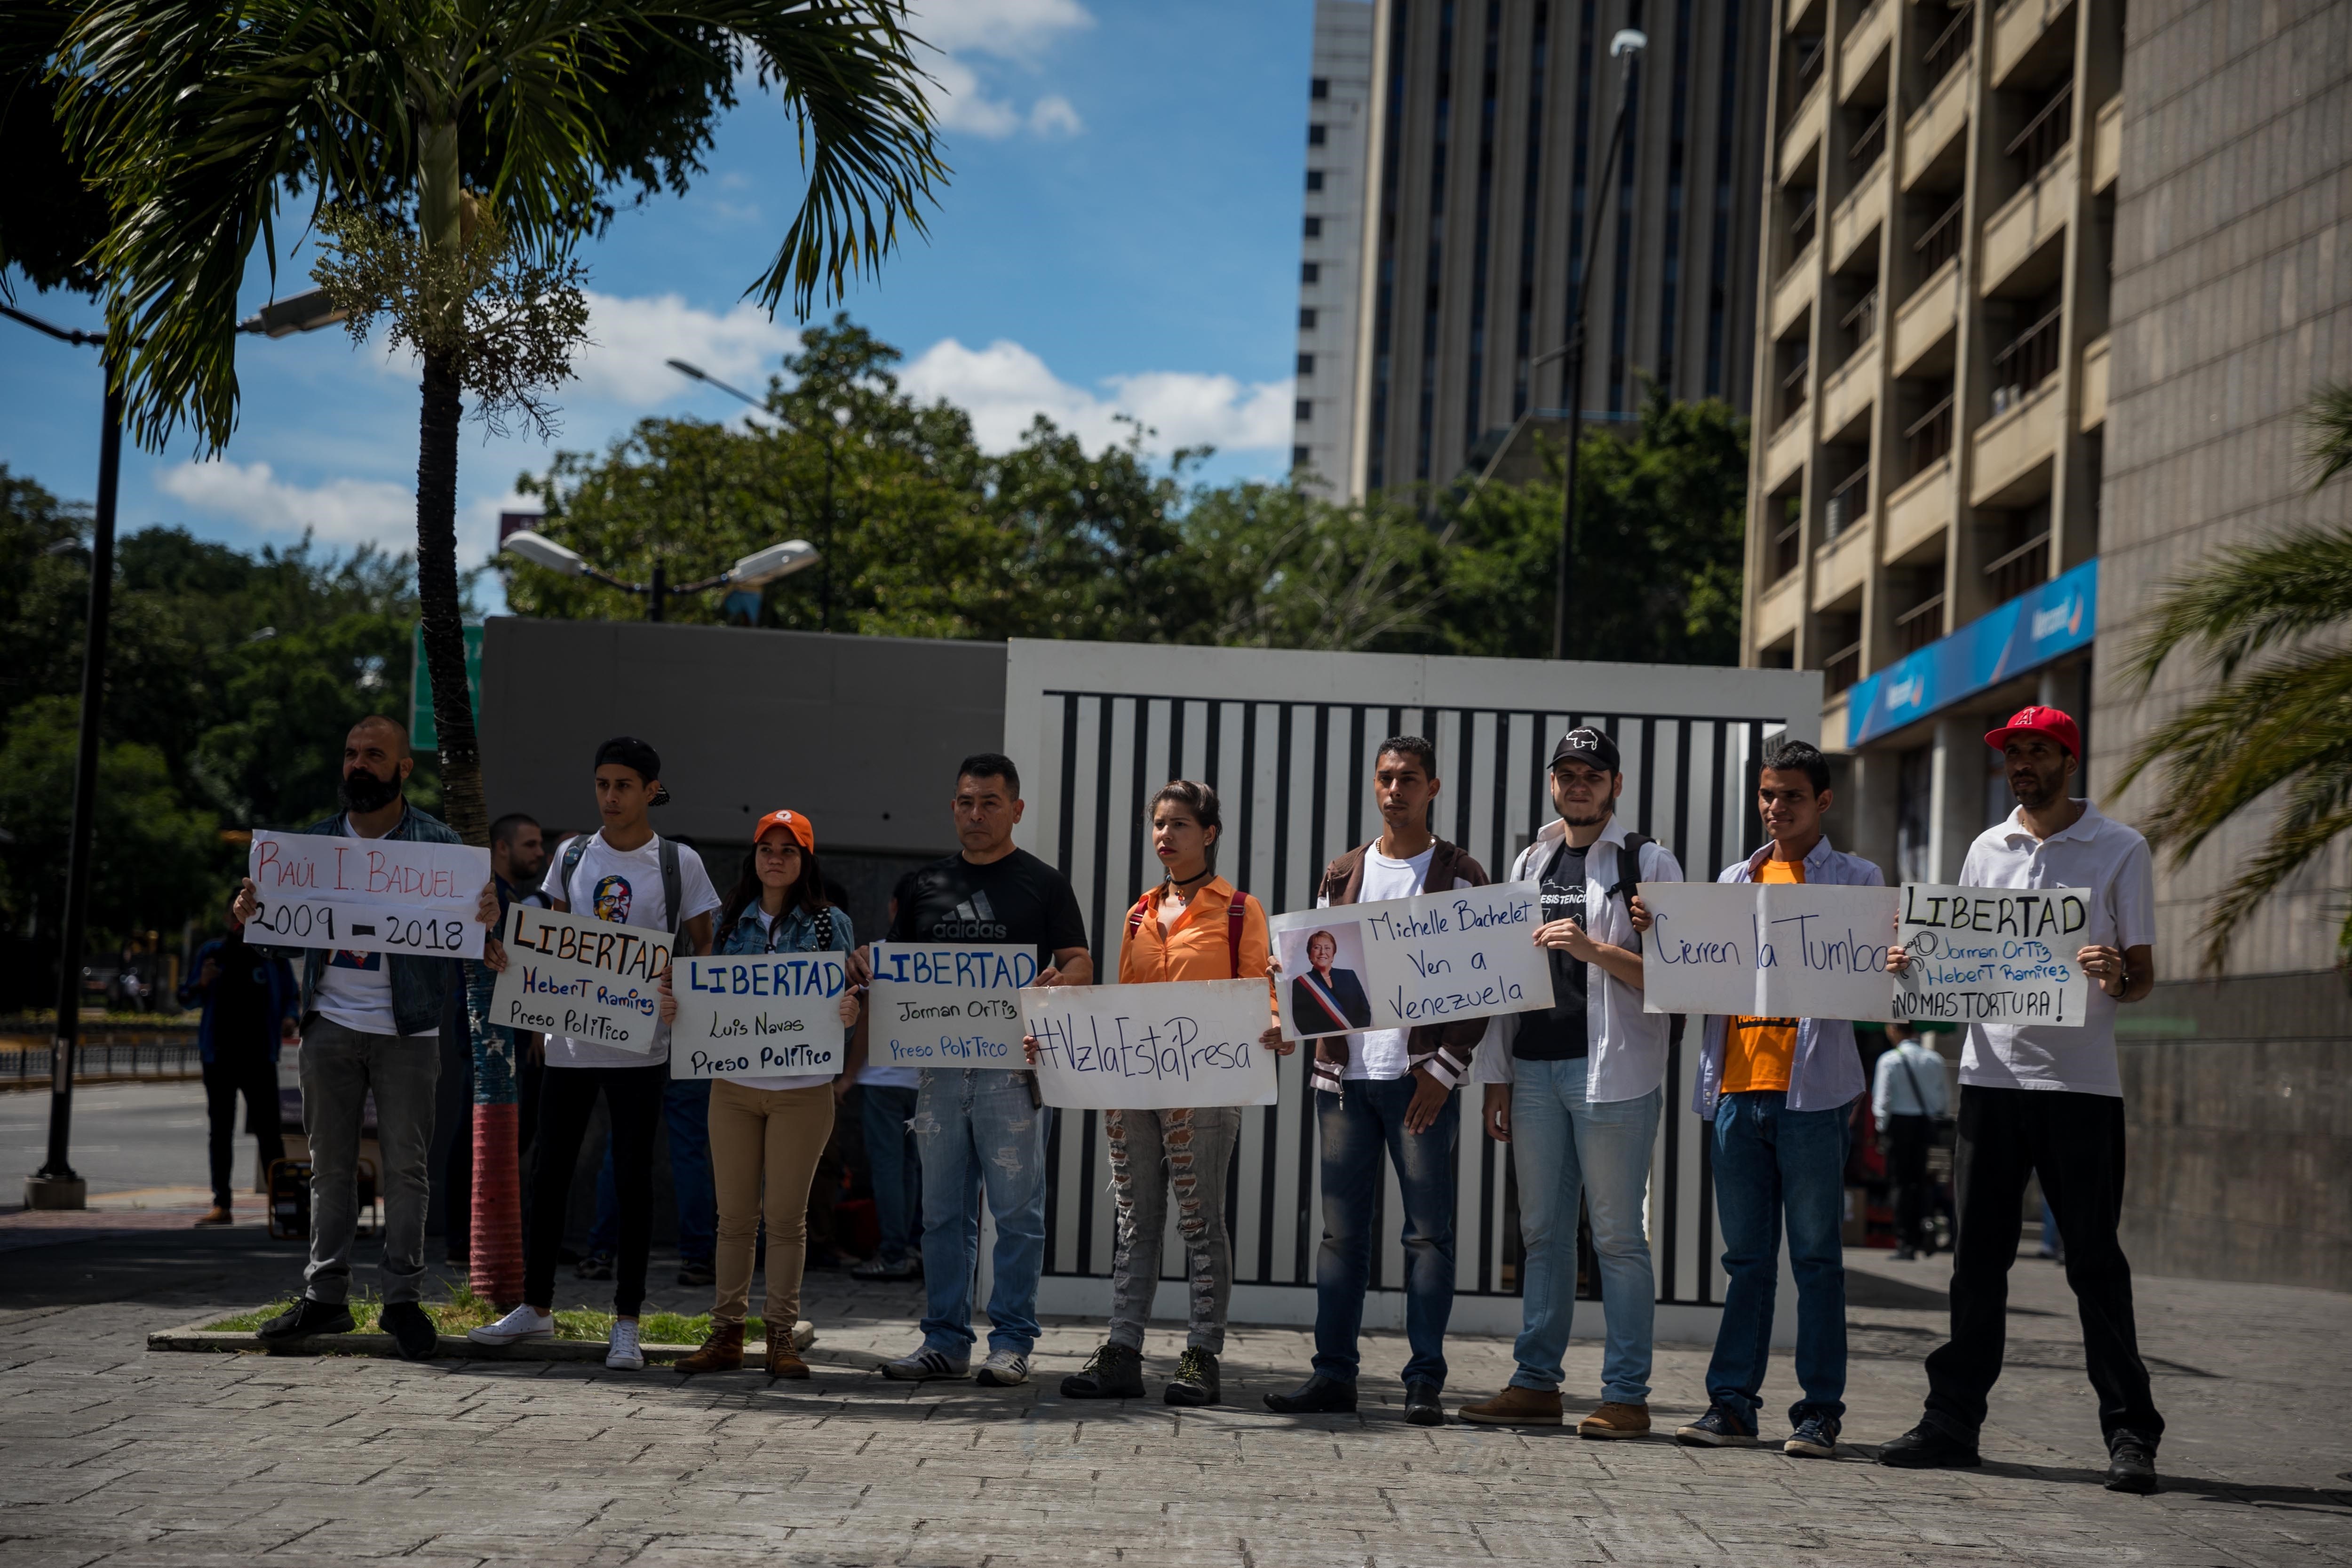 El registro de ciudadanos venezolanos al exigir la libertad de los presos políticos en su país, en Caracas